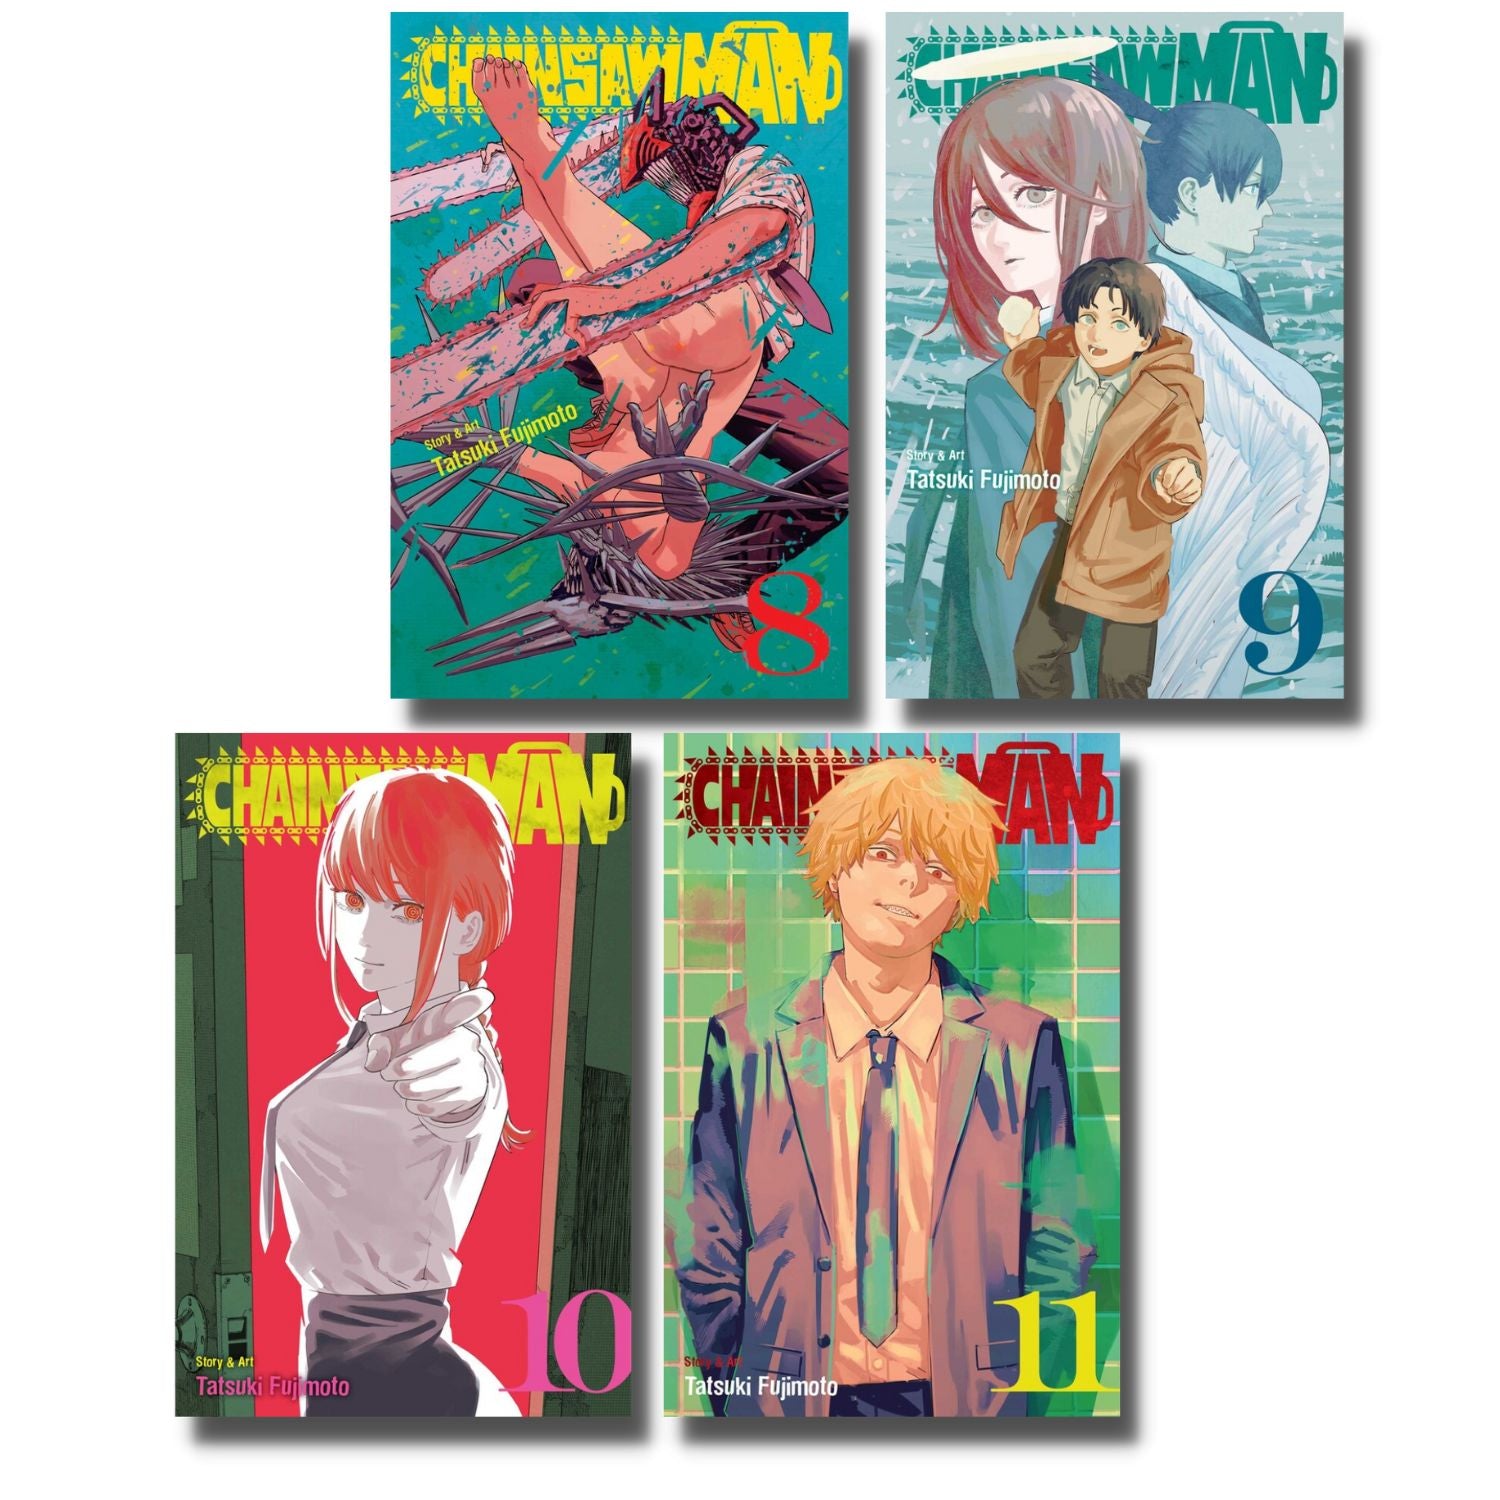 Chainsaw Man by Tatsuki Fujimoto: Vol. 1-5 Collection Set - Manga